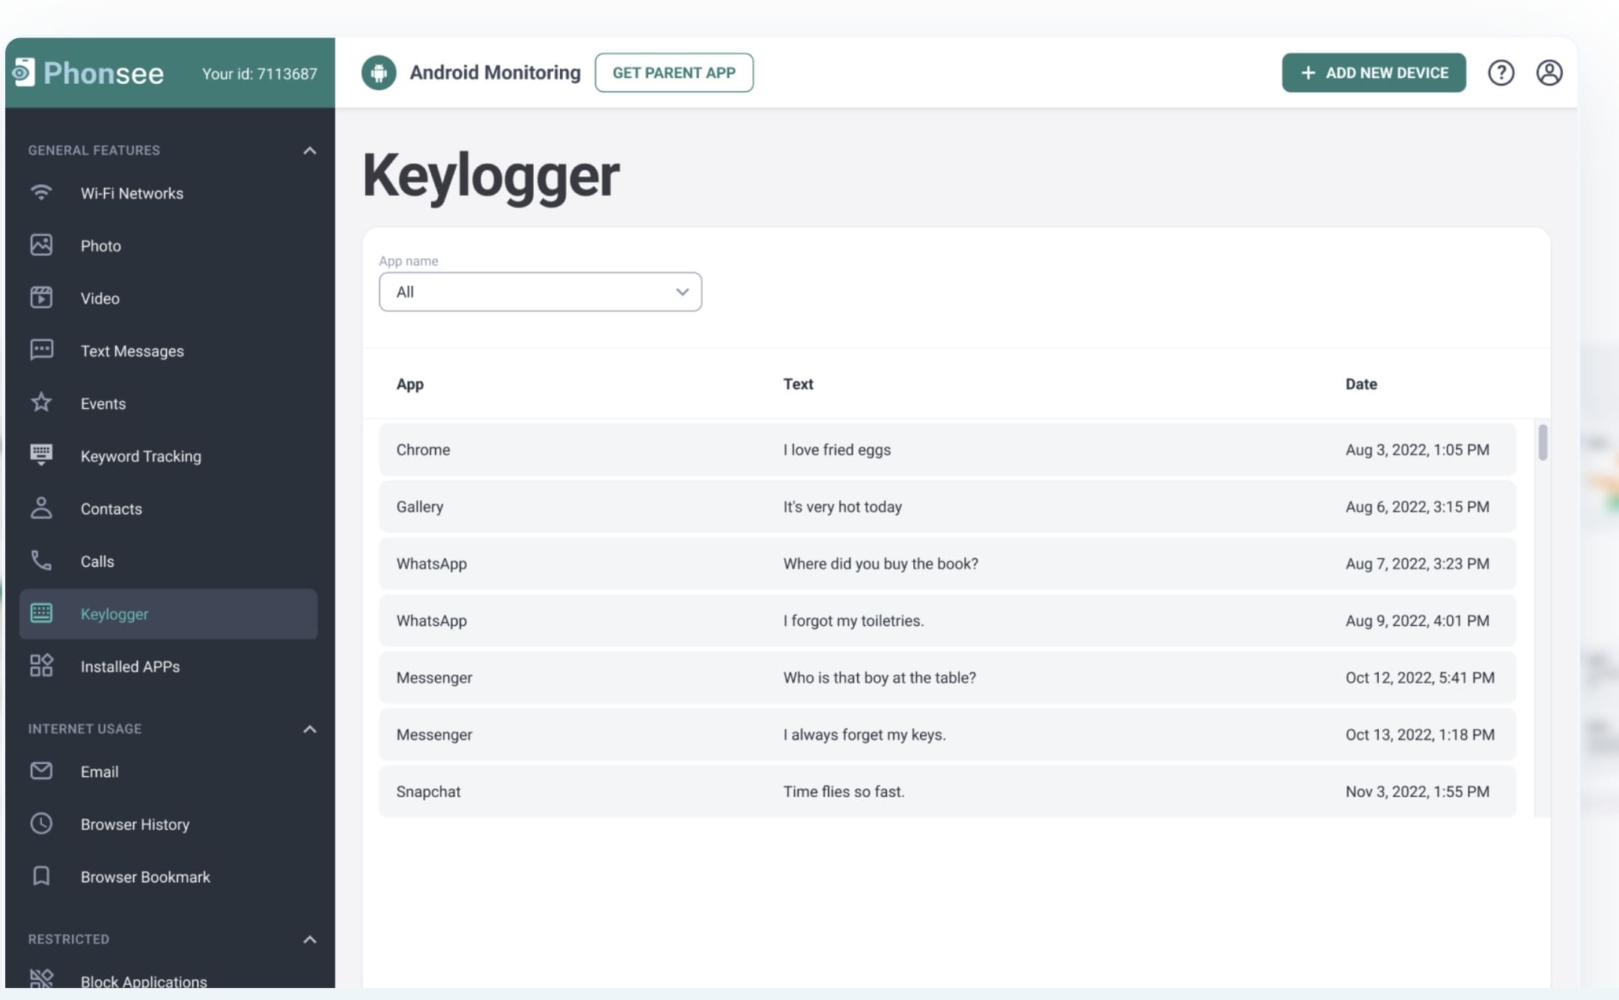 Painel de controlo da aplicação de monitorização Phonsee com a função de keylogger e mensagens de texto rastreadas capturadas